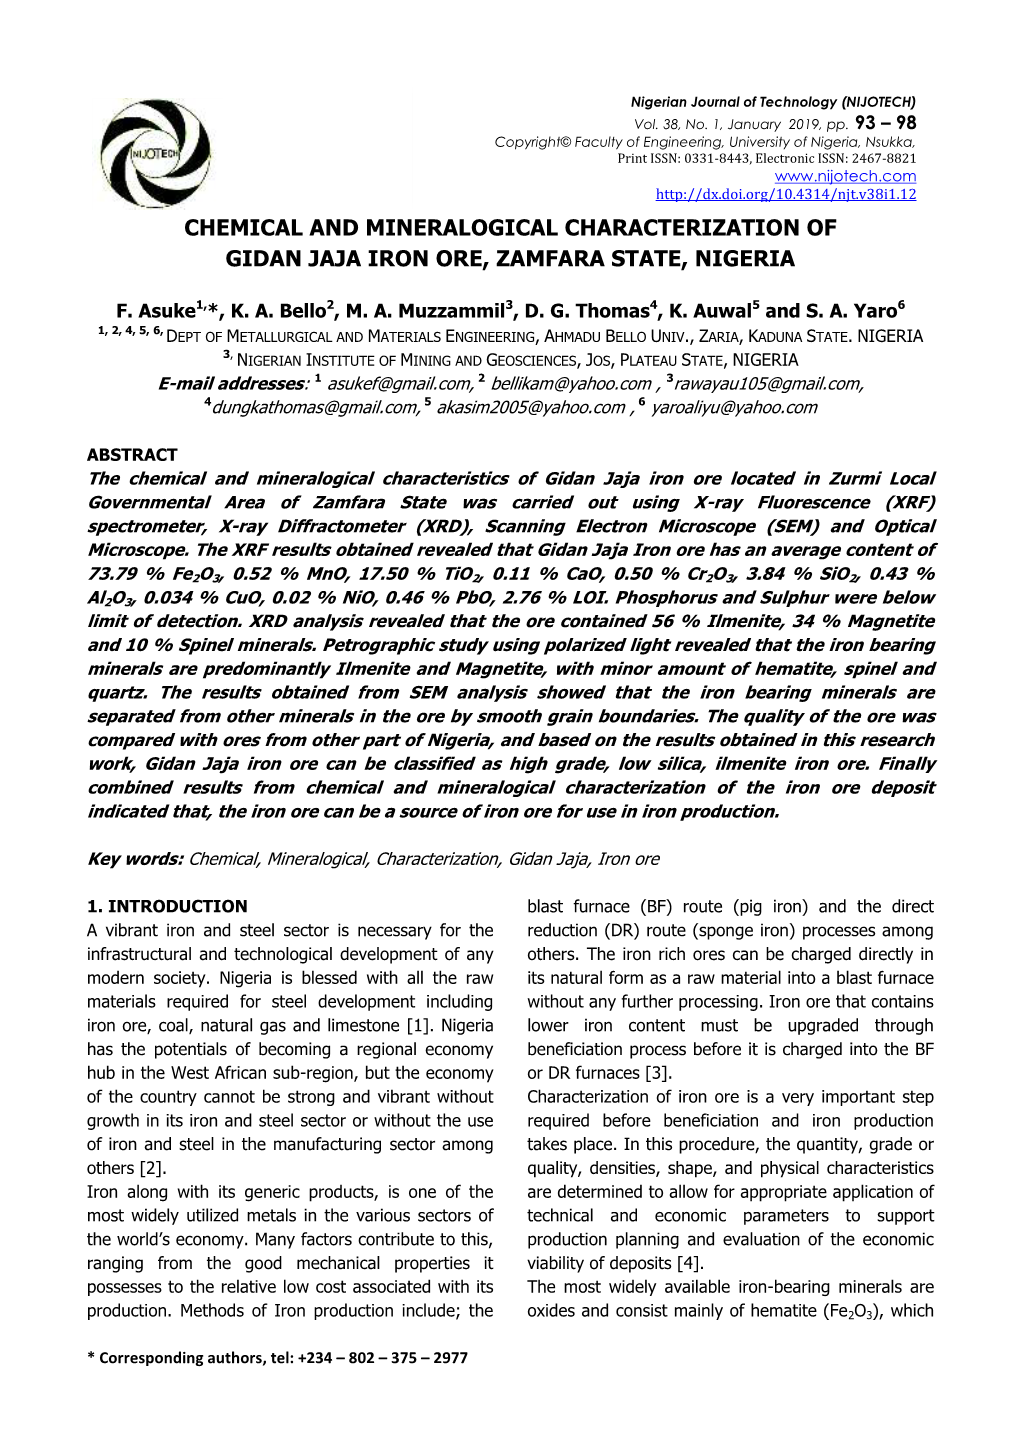 Chemical and Mineralogical Characterization of Gidan Jaja Iron Ore, Zamfara State, Nigeria